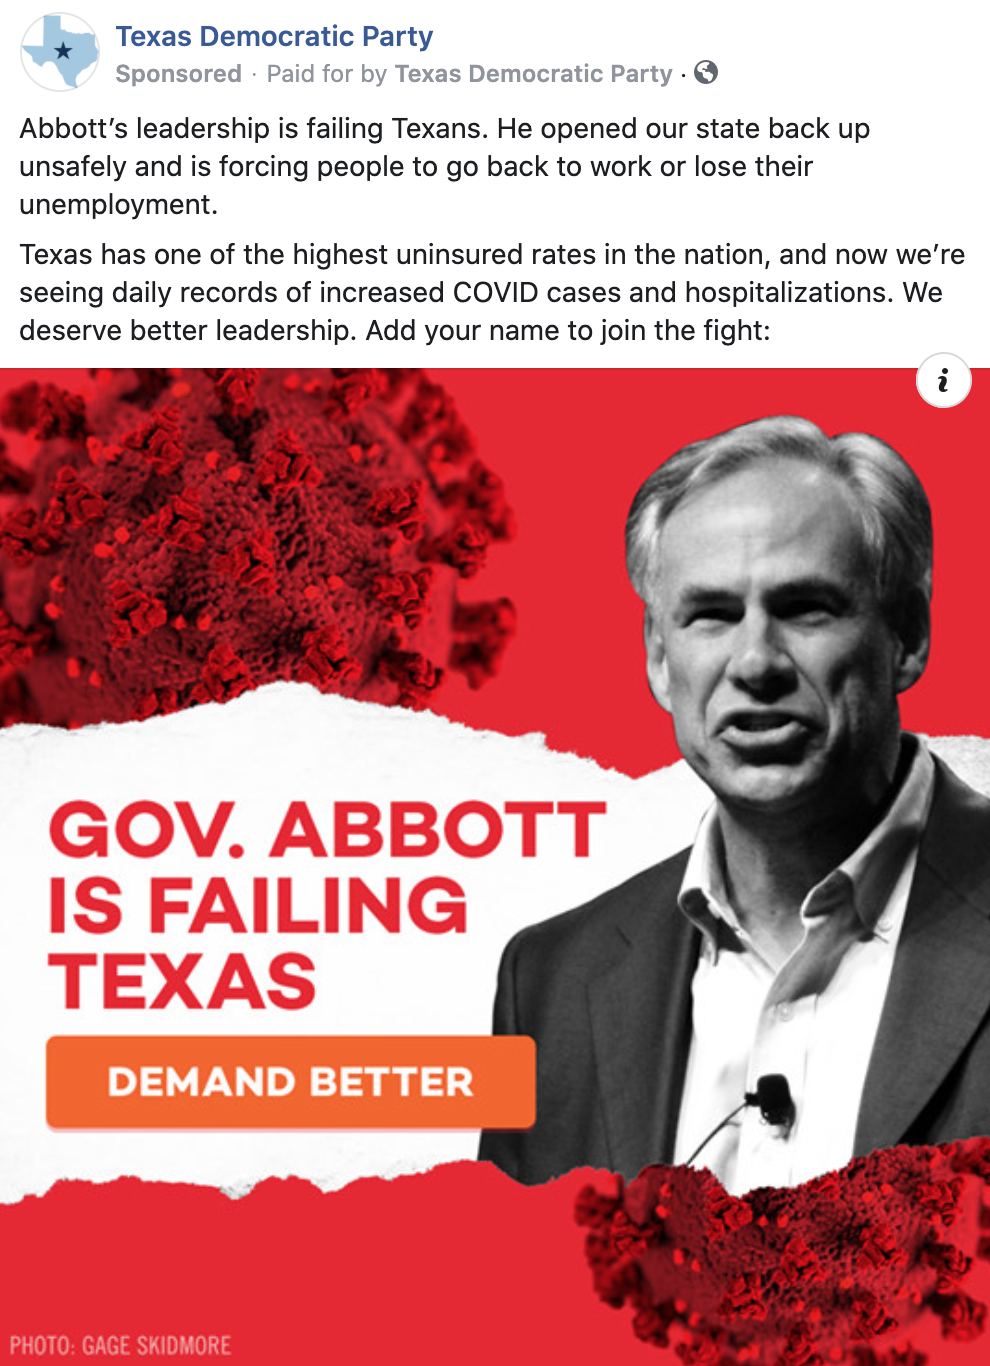 Let's elect more Texas Democrats!